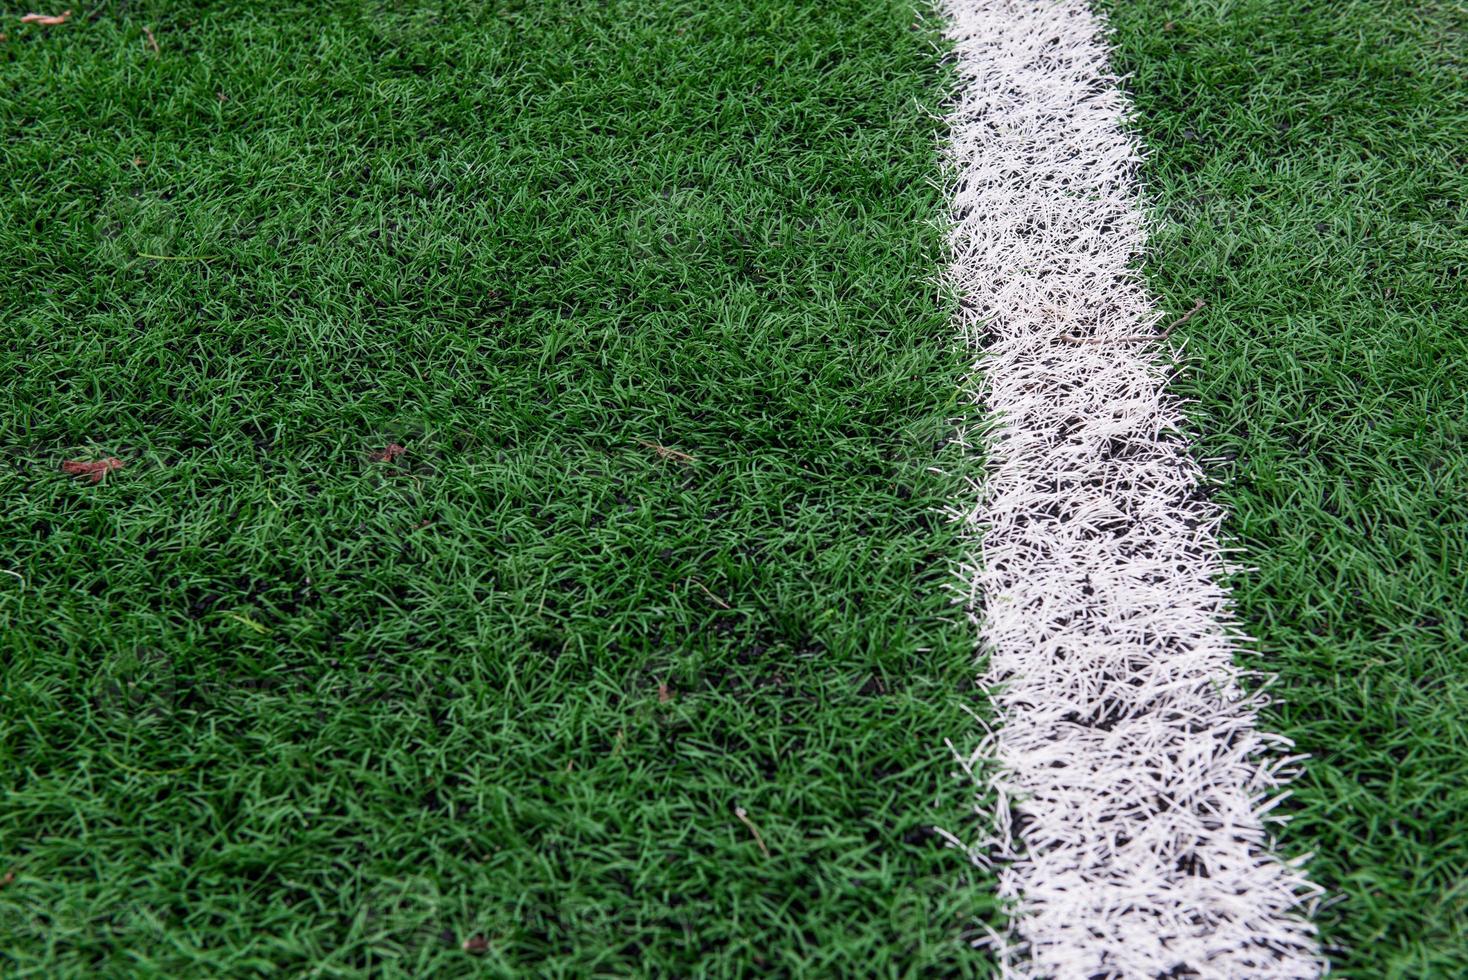 arena de futebol de grama artificial foto